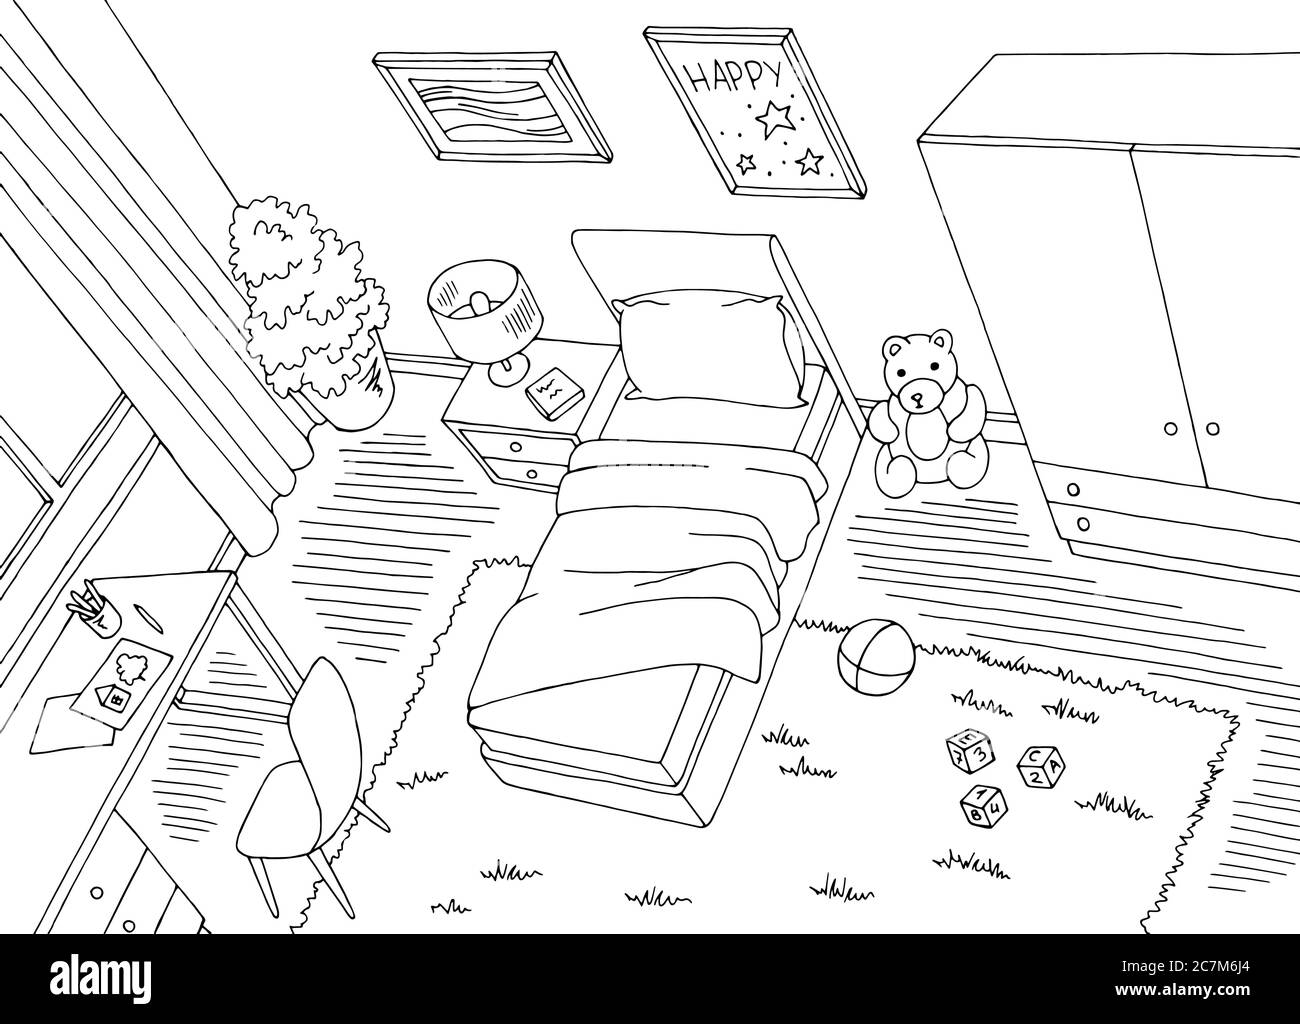 Kinder Zimmer Draufsicht von oben Grafik schwarz weiß Haus Interieur Skizze Illustration Vektor Stock Vektor